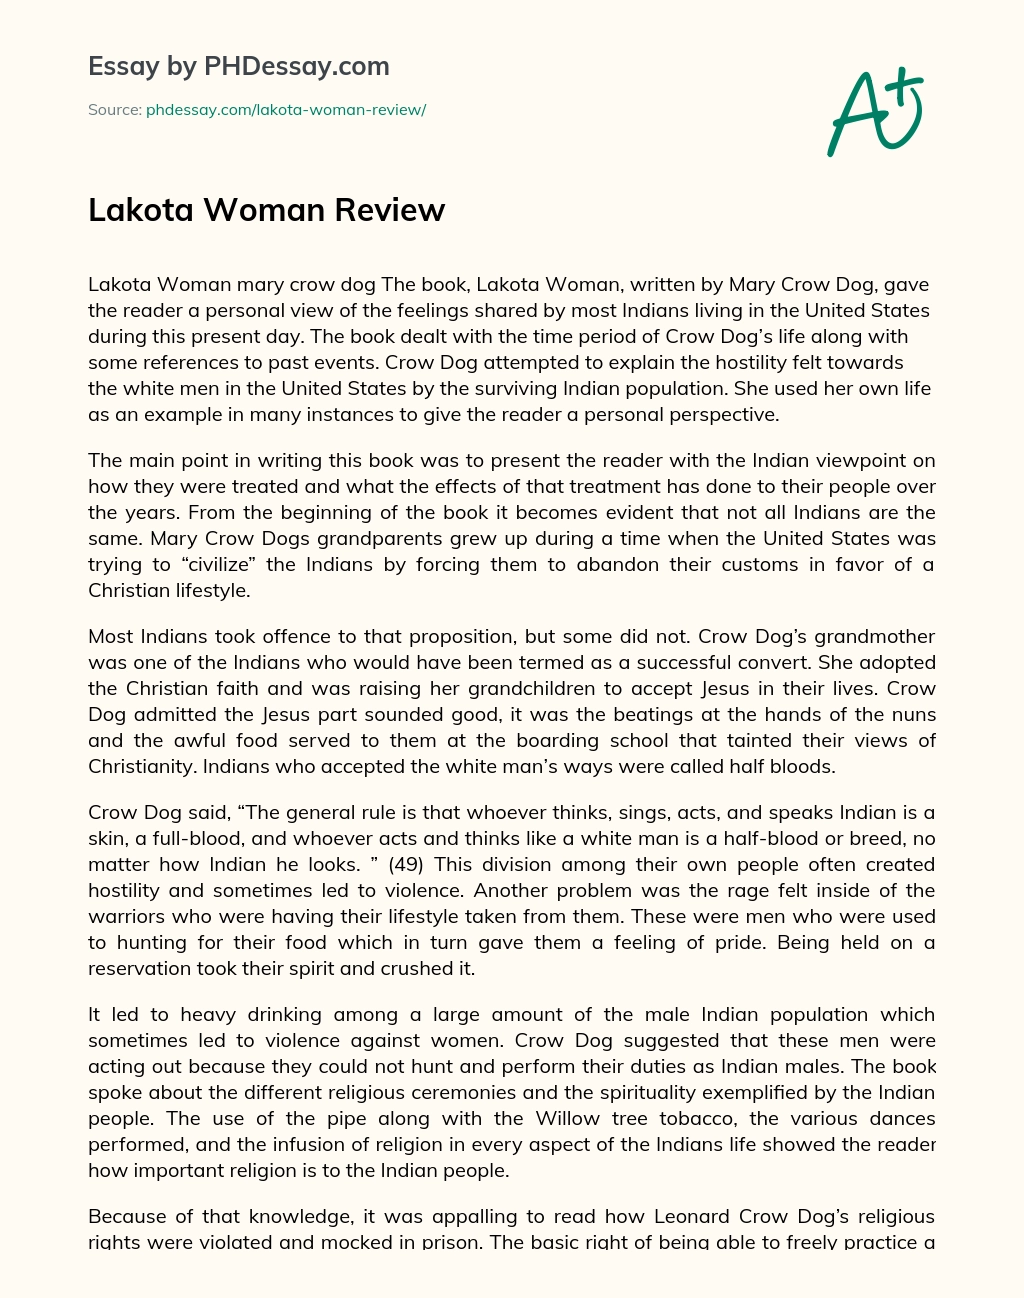 Lakota Woman Review essay